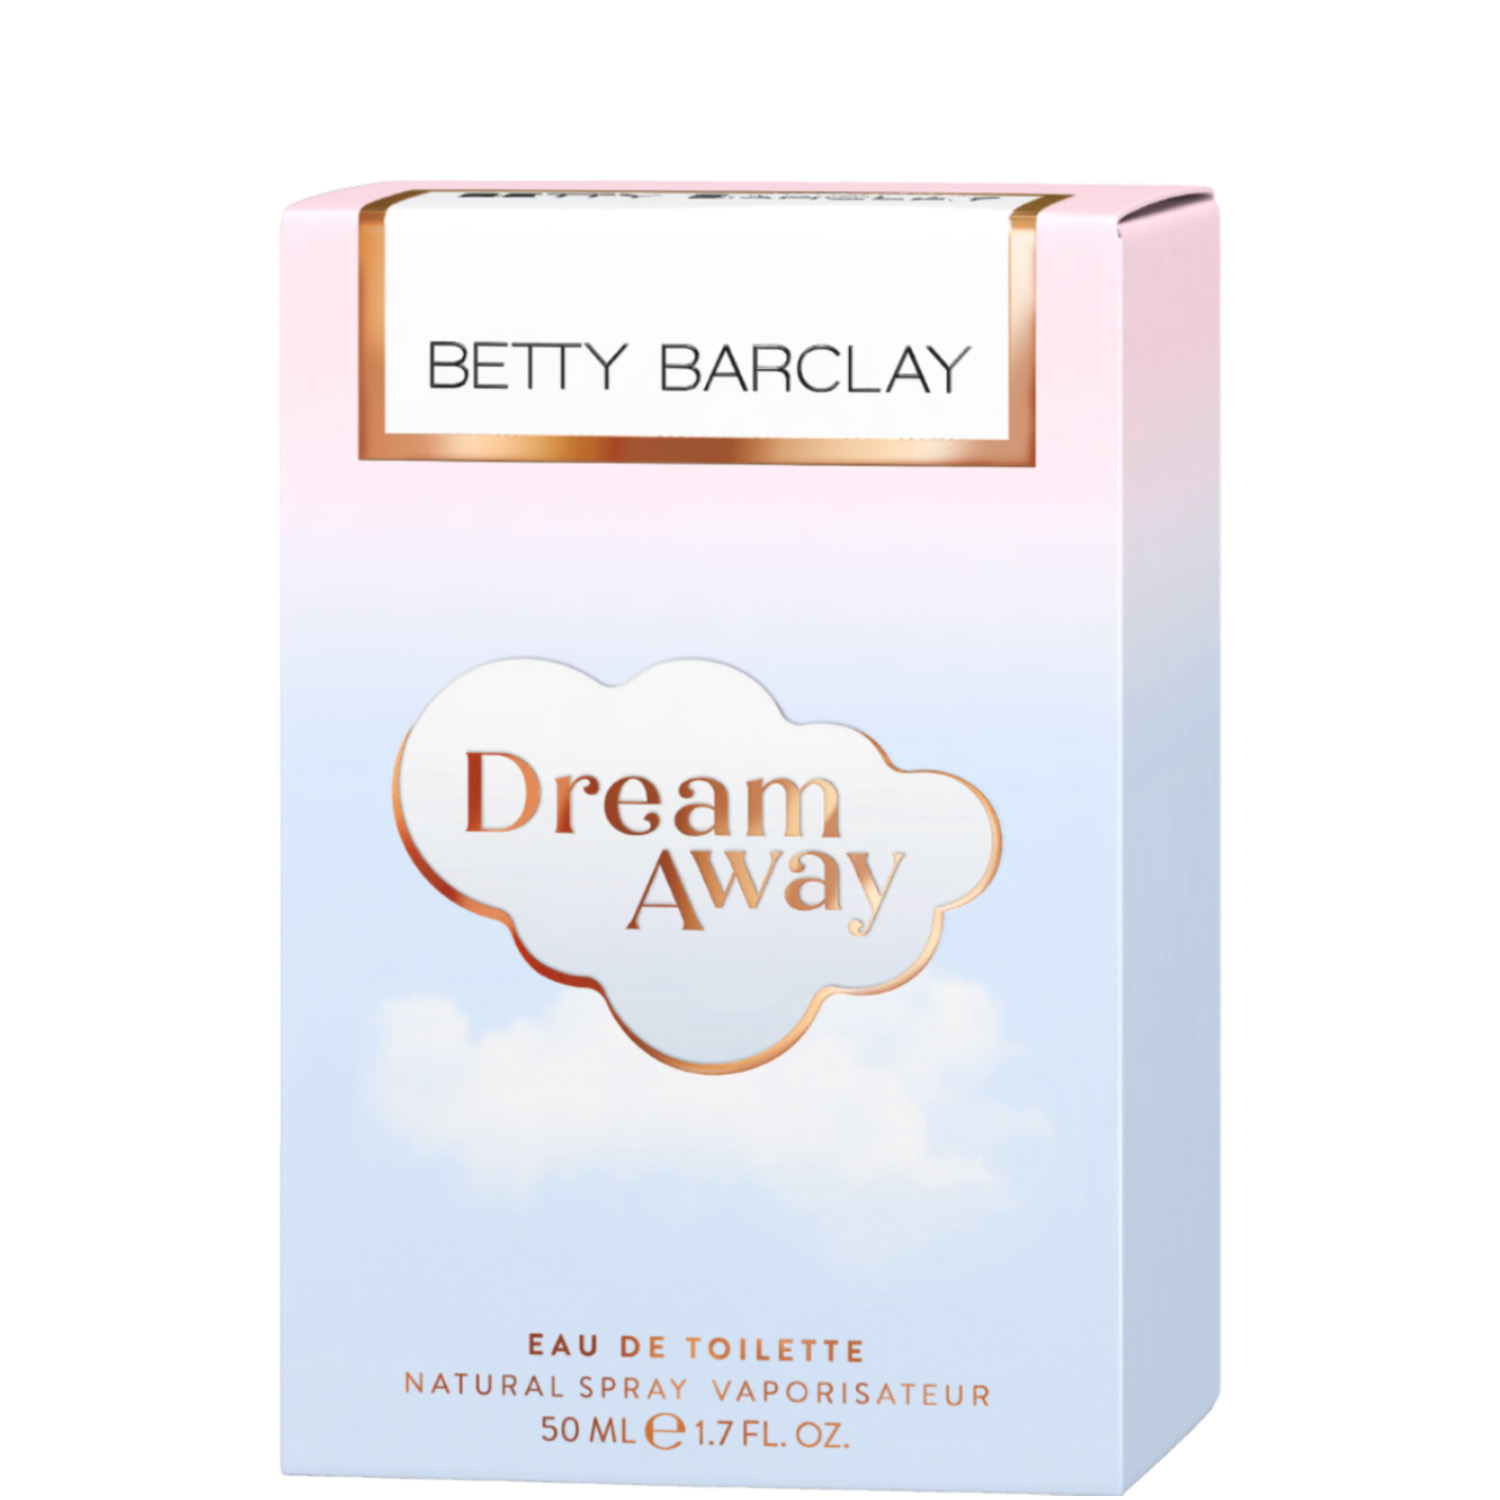 Betty Barclay Dream Away Eau de Toilette 50ml